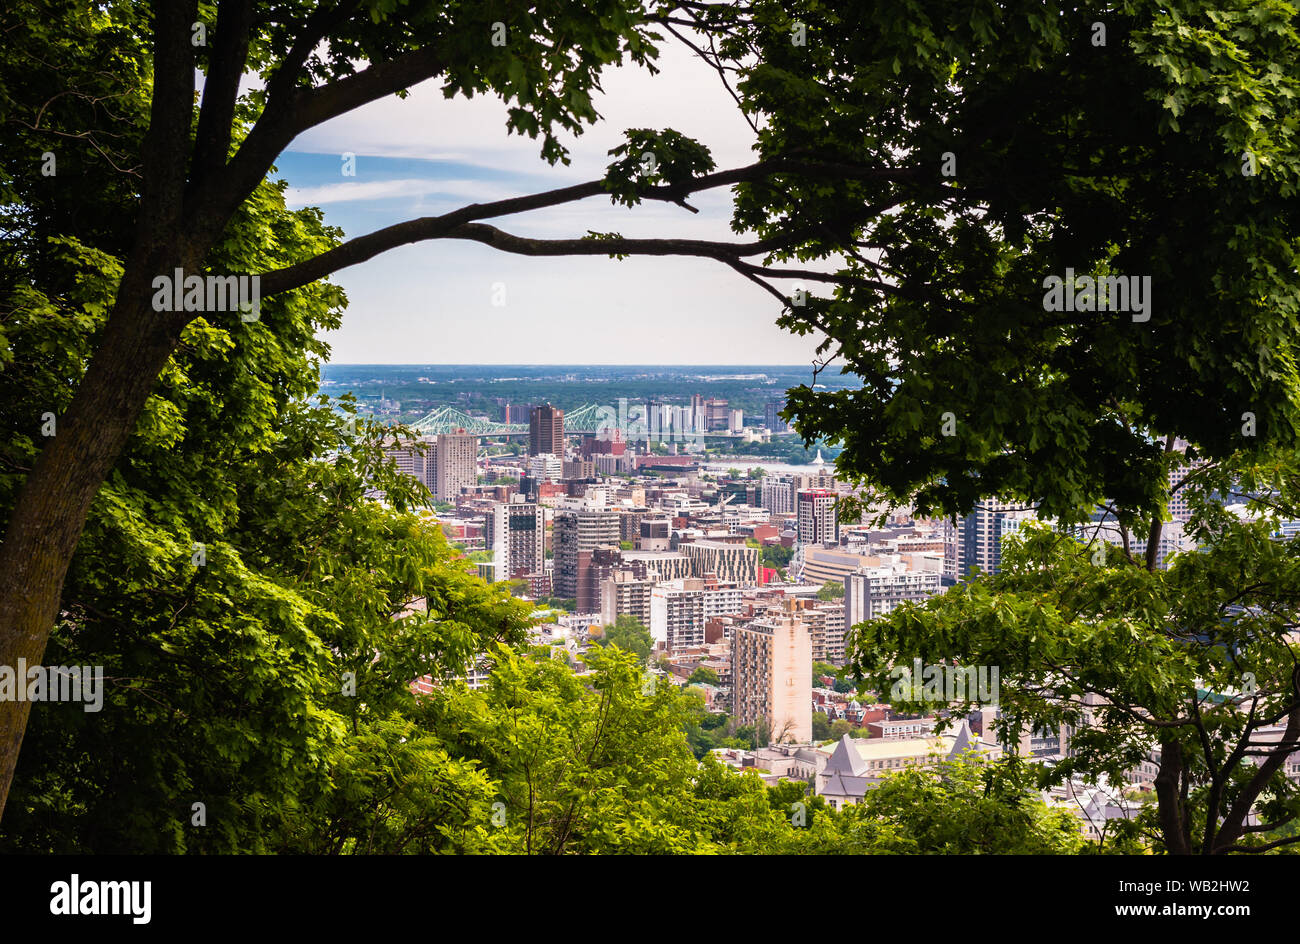 MONTREAL, Canada - 16 giugno 2018: parte del centro cittadino e Jacques Cartier Bridge può essere visto attraverso gli alberi guardando a nord-est da Mount Royal. Foto Stock